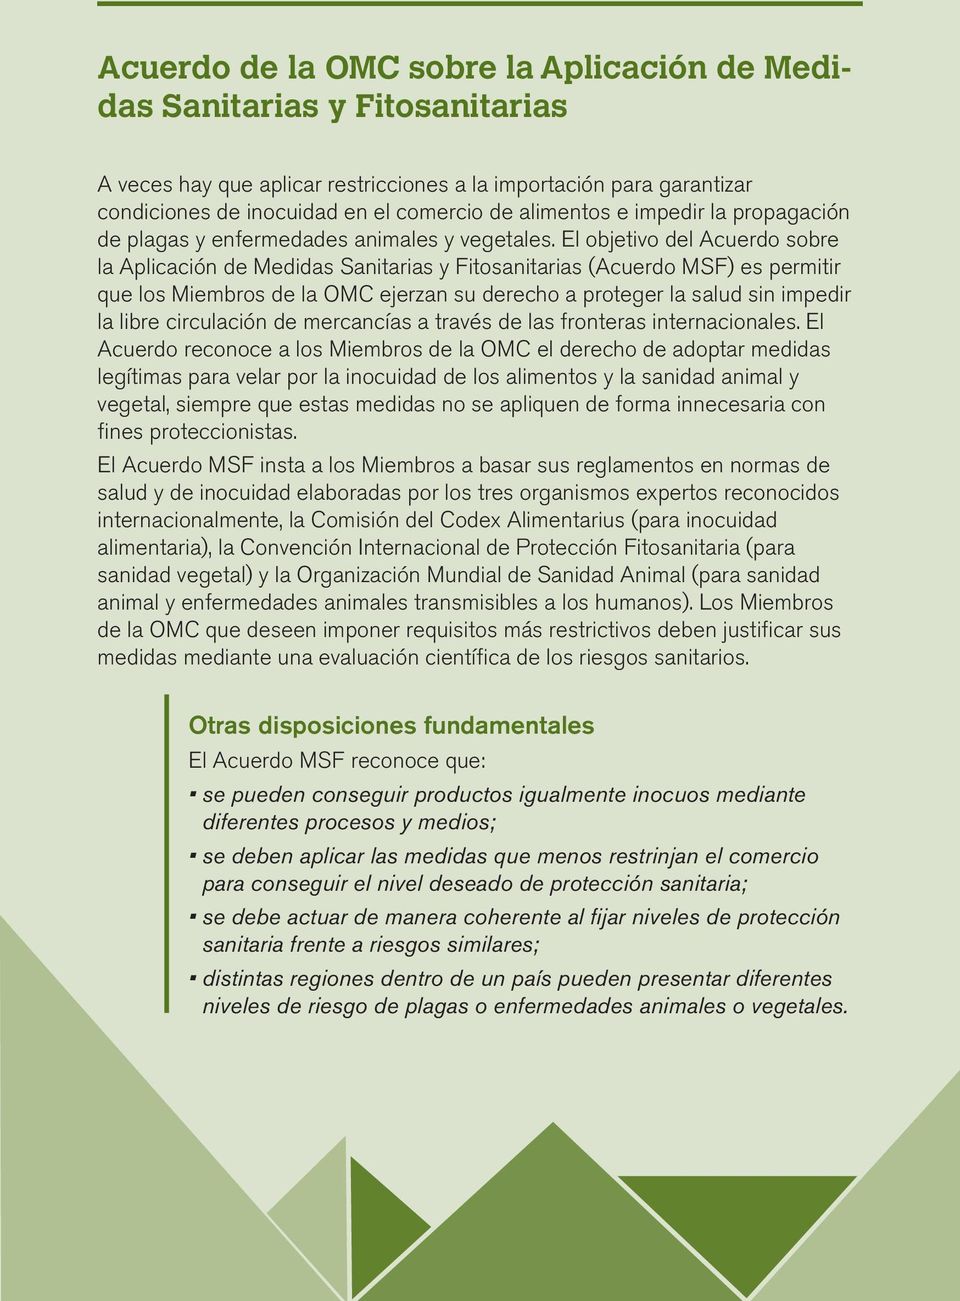 El objetivo del Acuerdo sobre la Aplicación de Medidas Sanitarias y Fitosanitarias (Acuerdo MSF) es permitir que los Miembros de la OMC ejerzan su derecho a proteger la salud sin impedir la libre